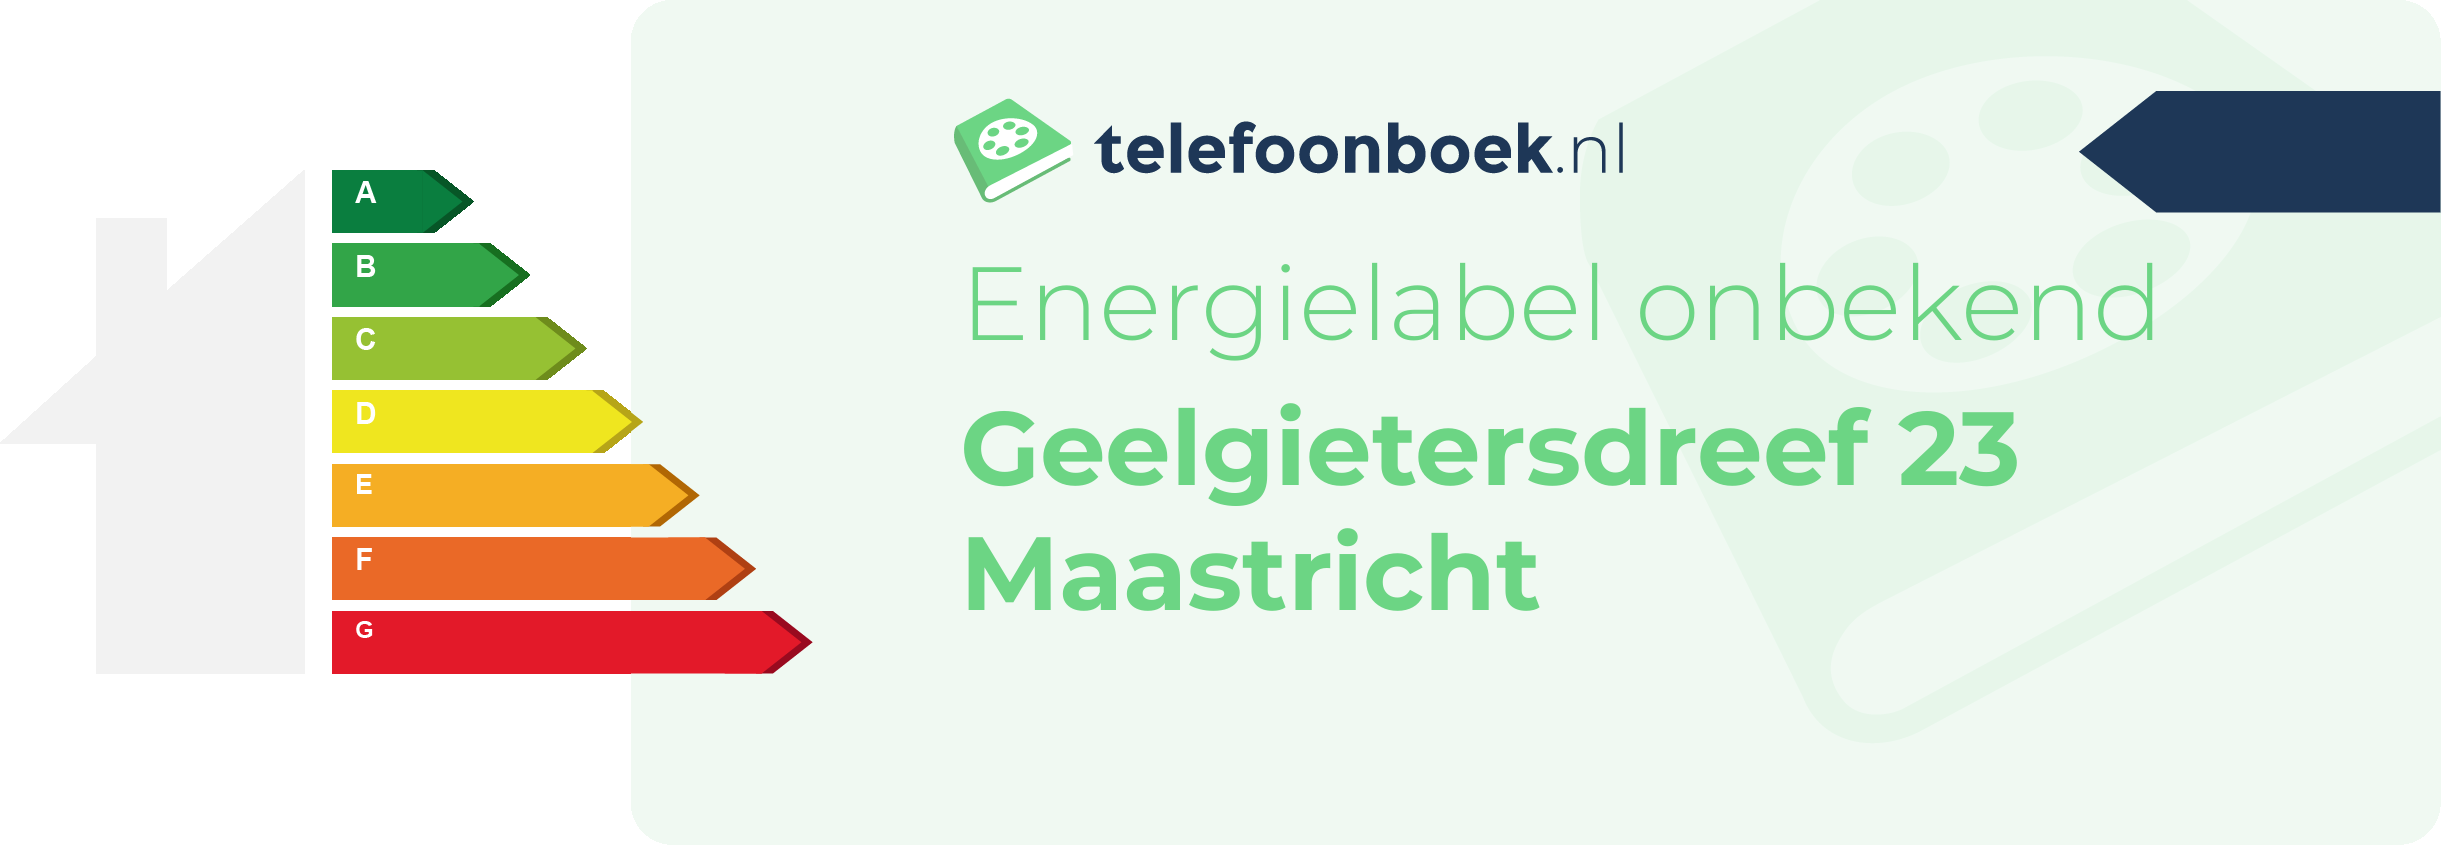 Energielabel Geelgietersdreef 23 Maastricht